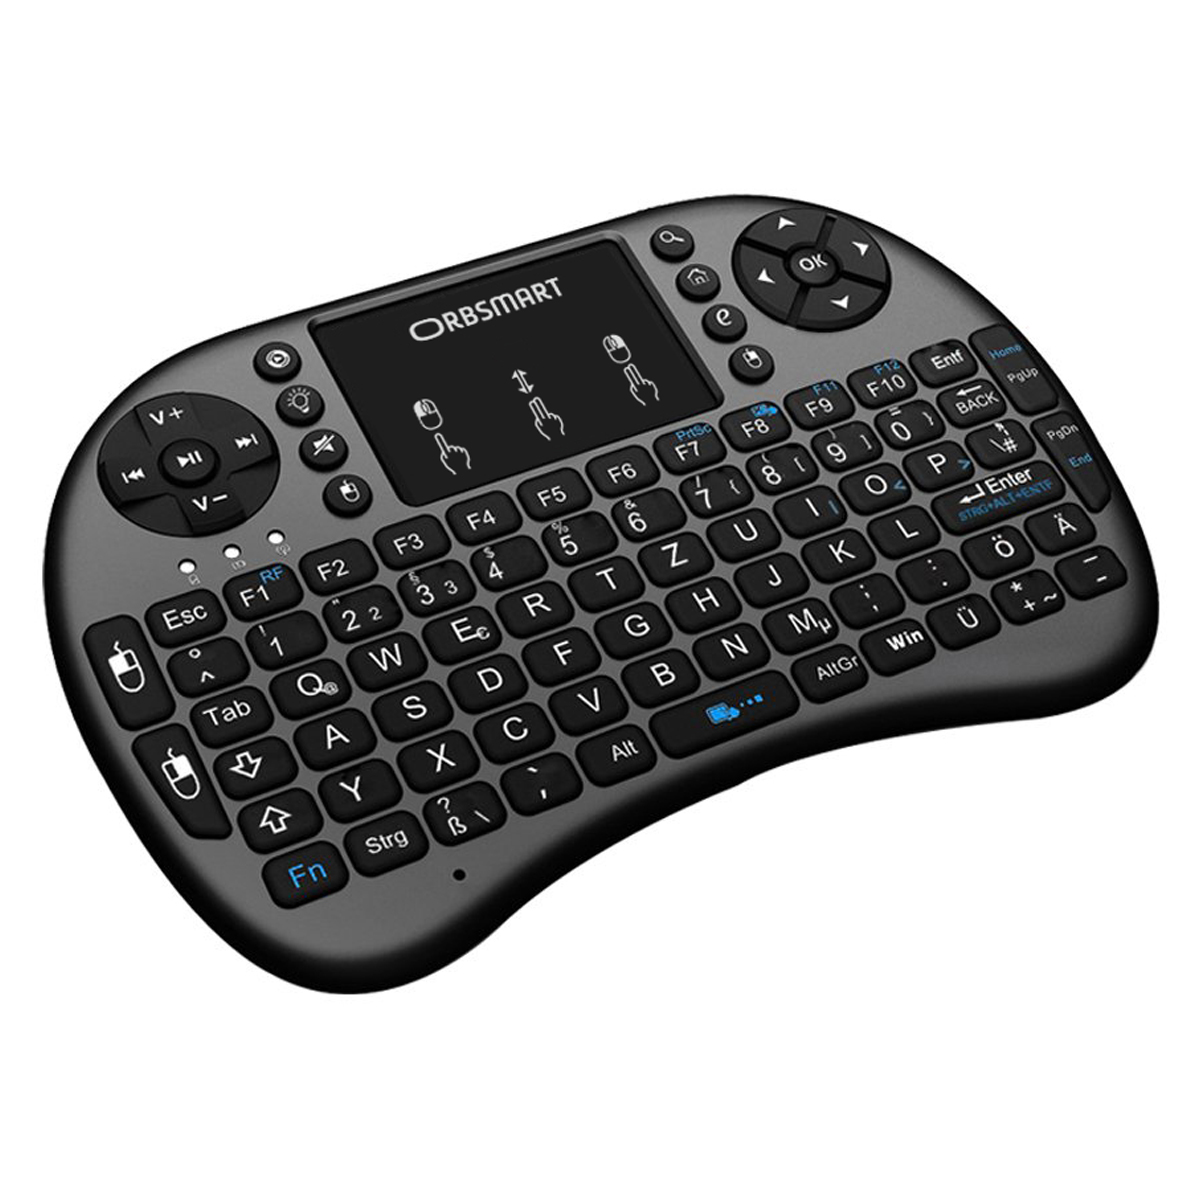 ORBSMART AM-2 & mit inkl. deutsches kabellos Wireless Keyboard Mini-Tastatur LED-Beleuchtung, Tastaturlayout / Touchpad